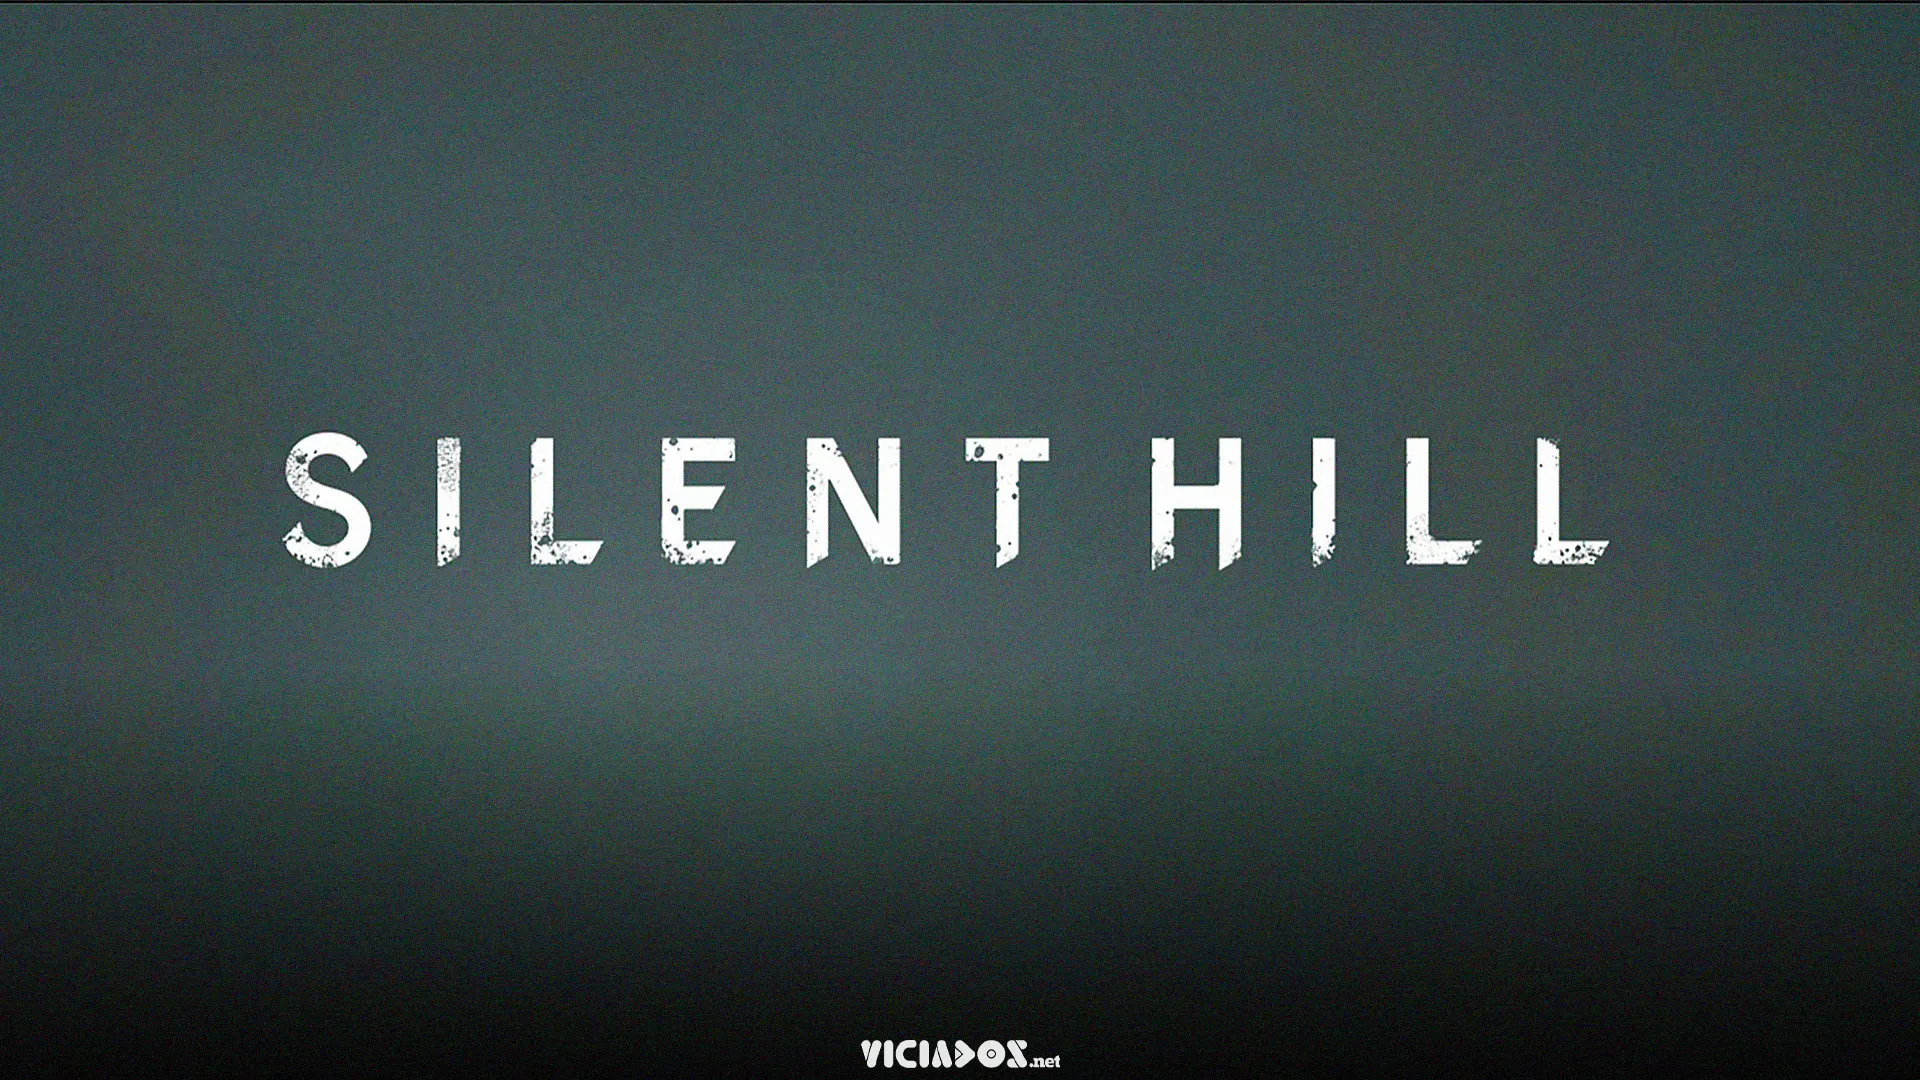 Silent Hill 2 Part 1 aparece na base de dados do YouTube 2022 Viciados